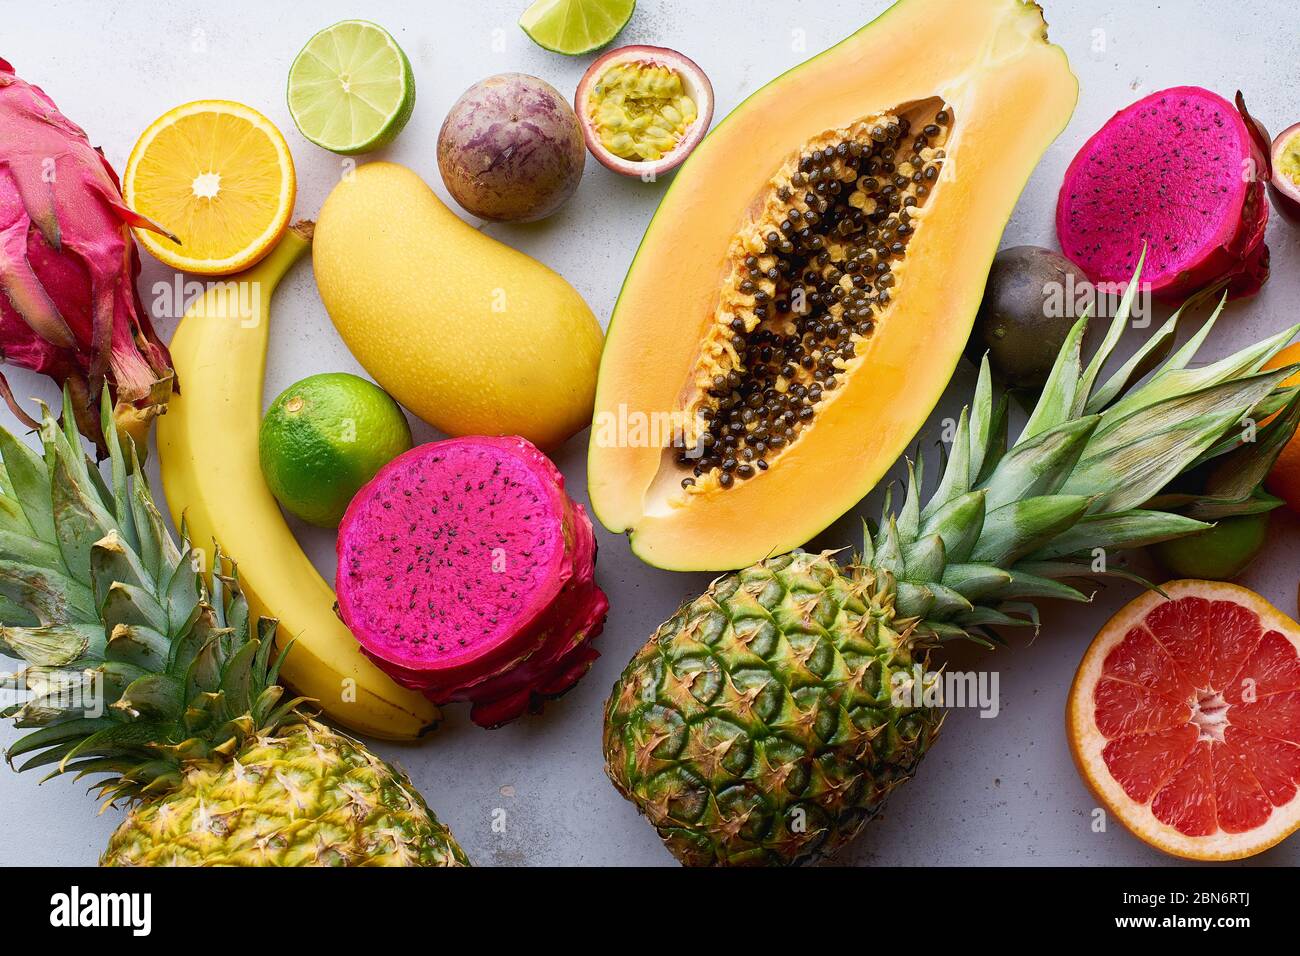 Les fruits tropicaux sont accompagnés de mangue, papaye, pitahaya, fruits de la passion, raisins, limettes et ananas. Table avec ingrédients pour les collations d'été sur béton Banque D'Images